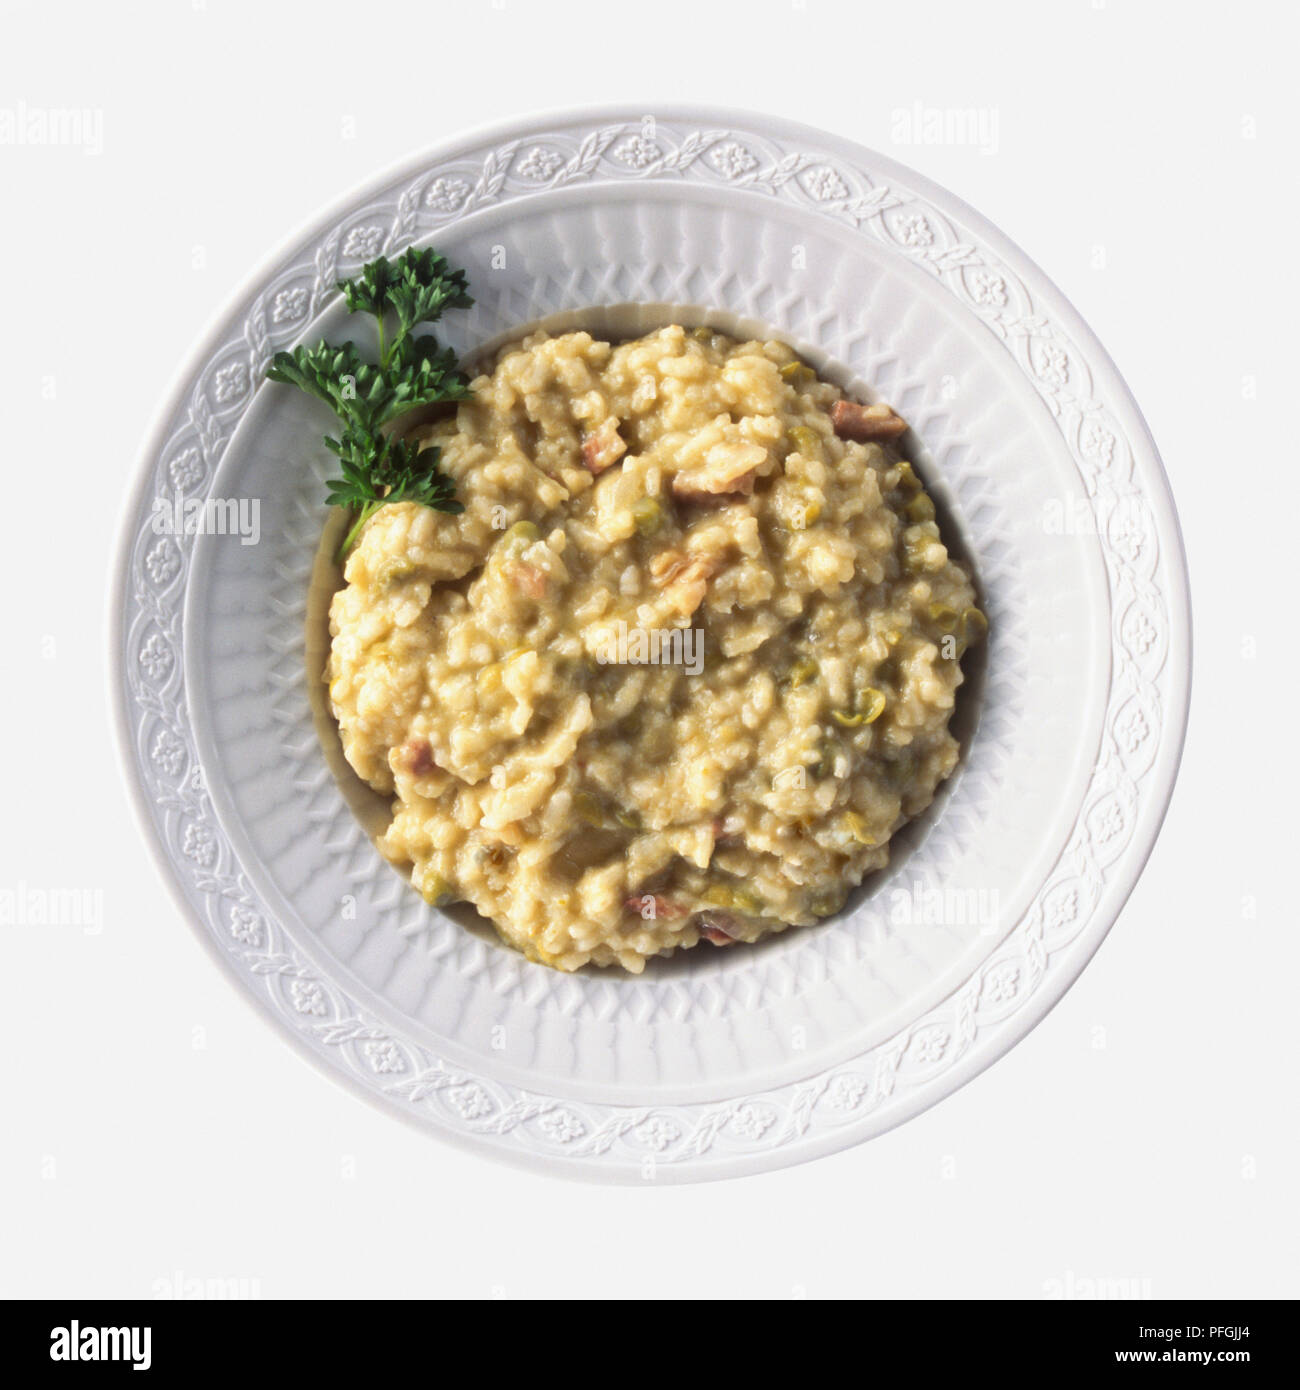 Platte von Risi e Bisi, Risotto mit Erbsen und Schinken gemacht und mit Petersilie garniert, ein typisches Gericht aus dem Veneto, Italien, Ansicht von oben Stockfoto